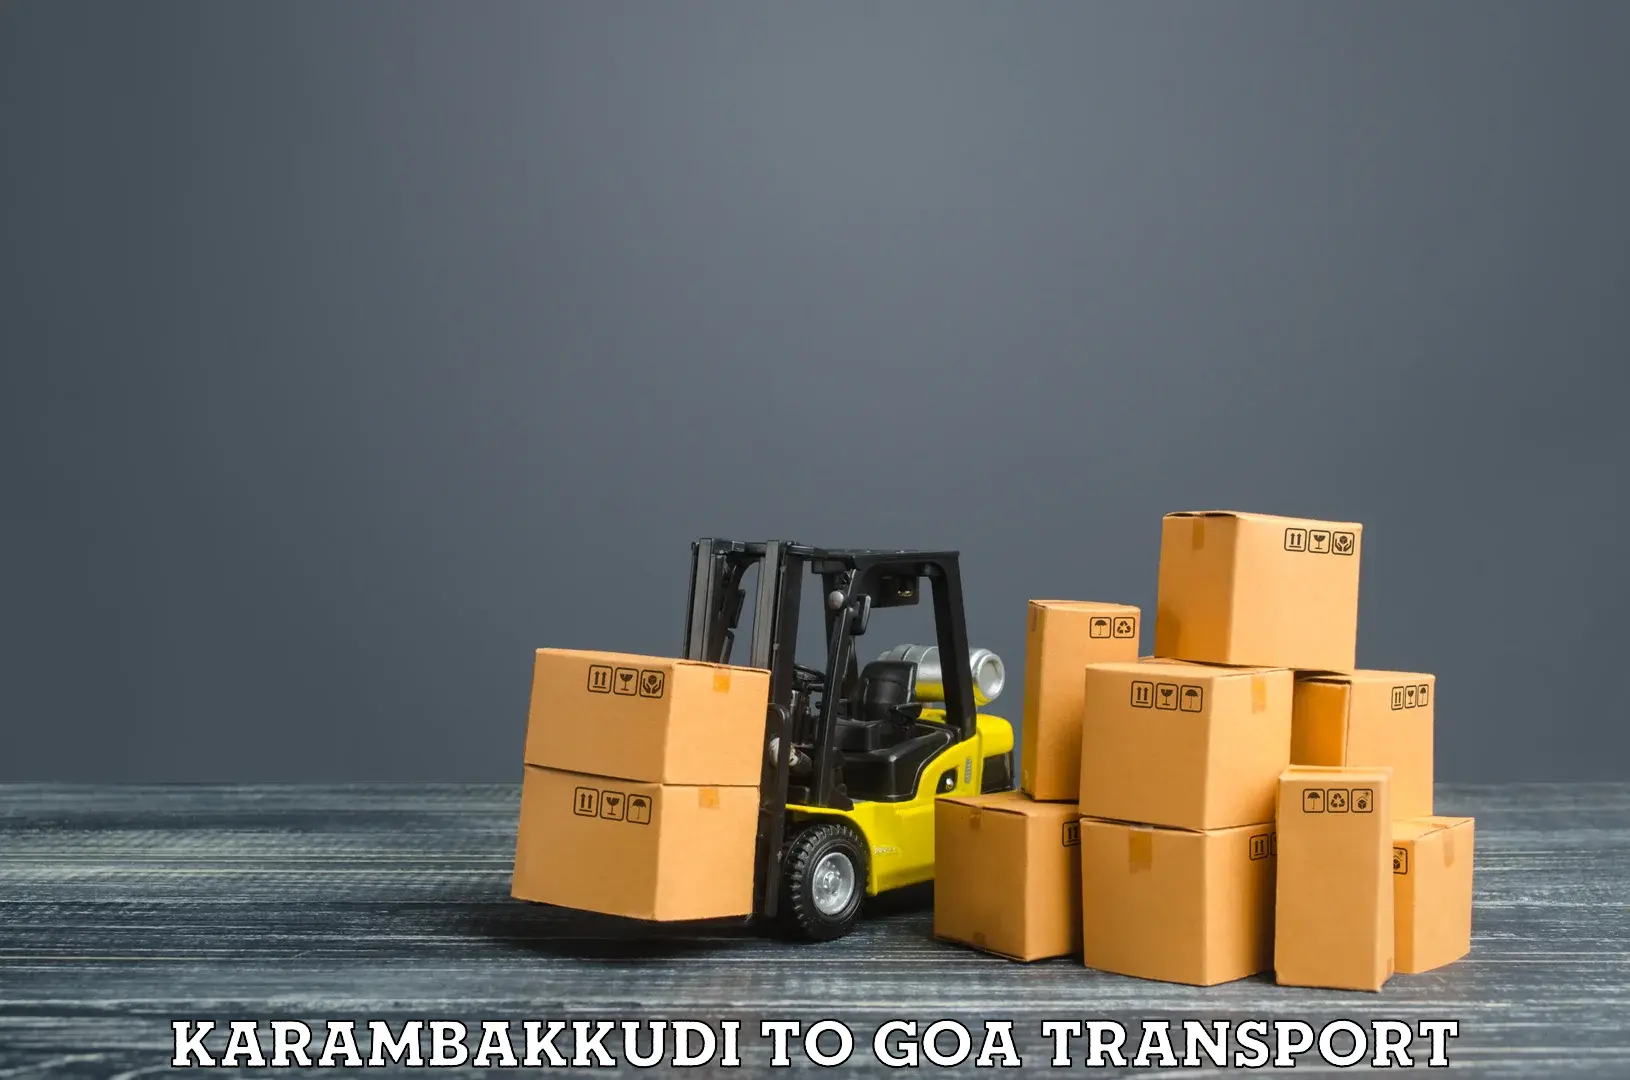 Furniture transport service Karambakkudi to Margao